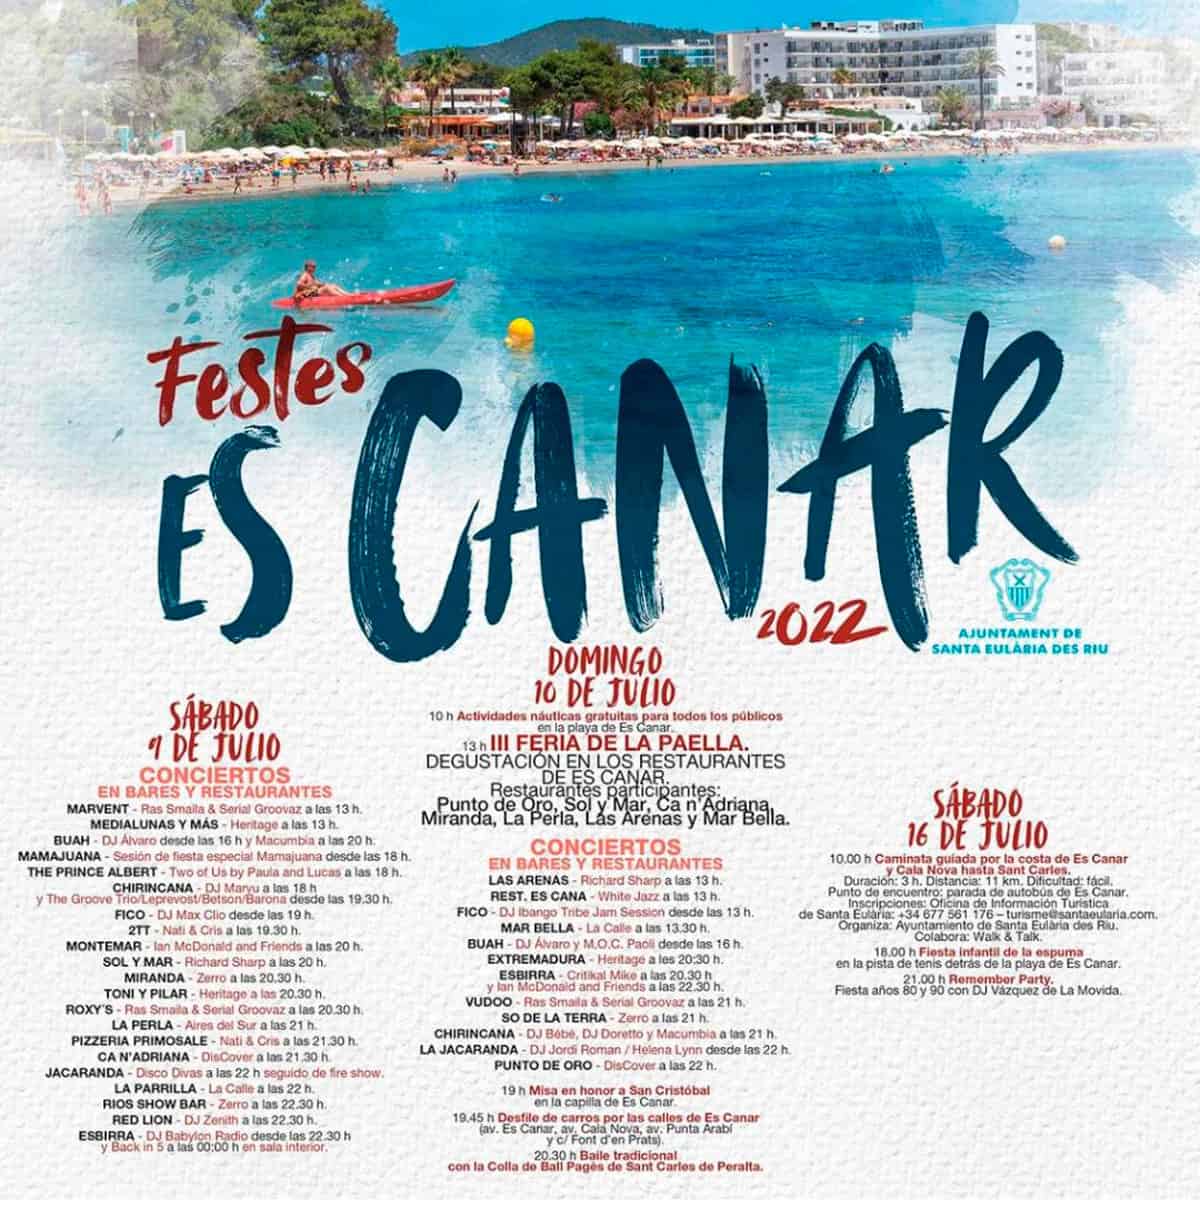 Fiestas-de-es-canar-ibiza-2022-welcometoibiza